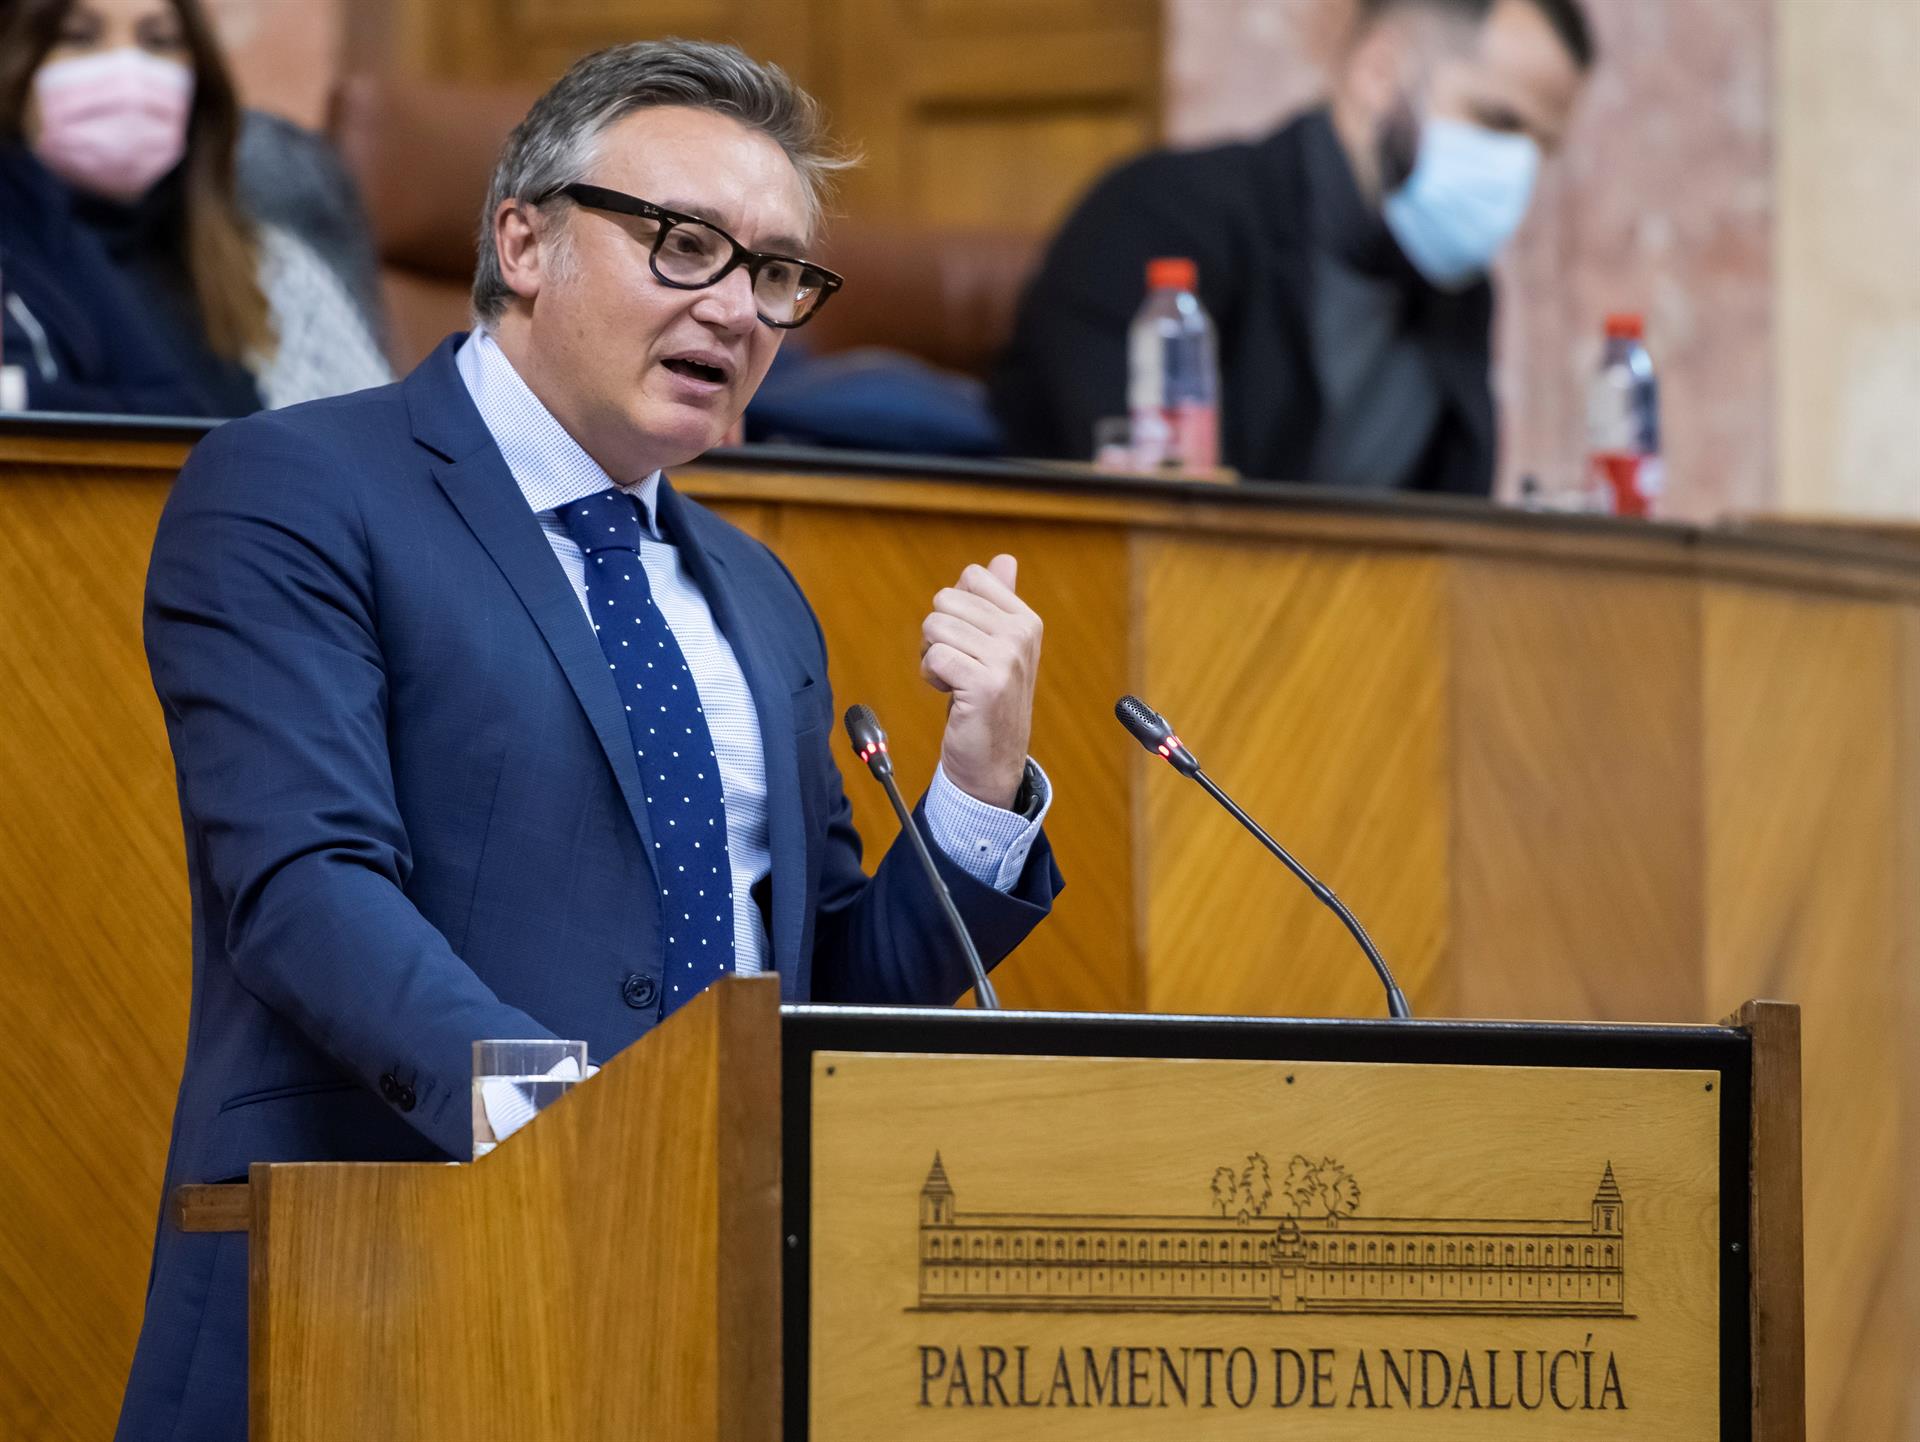 El diputado de Vox en Andalucía Manuel Gavira durante una intervención en el pleno del Parlamento, donde ejercerá como portavoz. EFE/Archivo